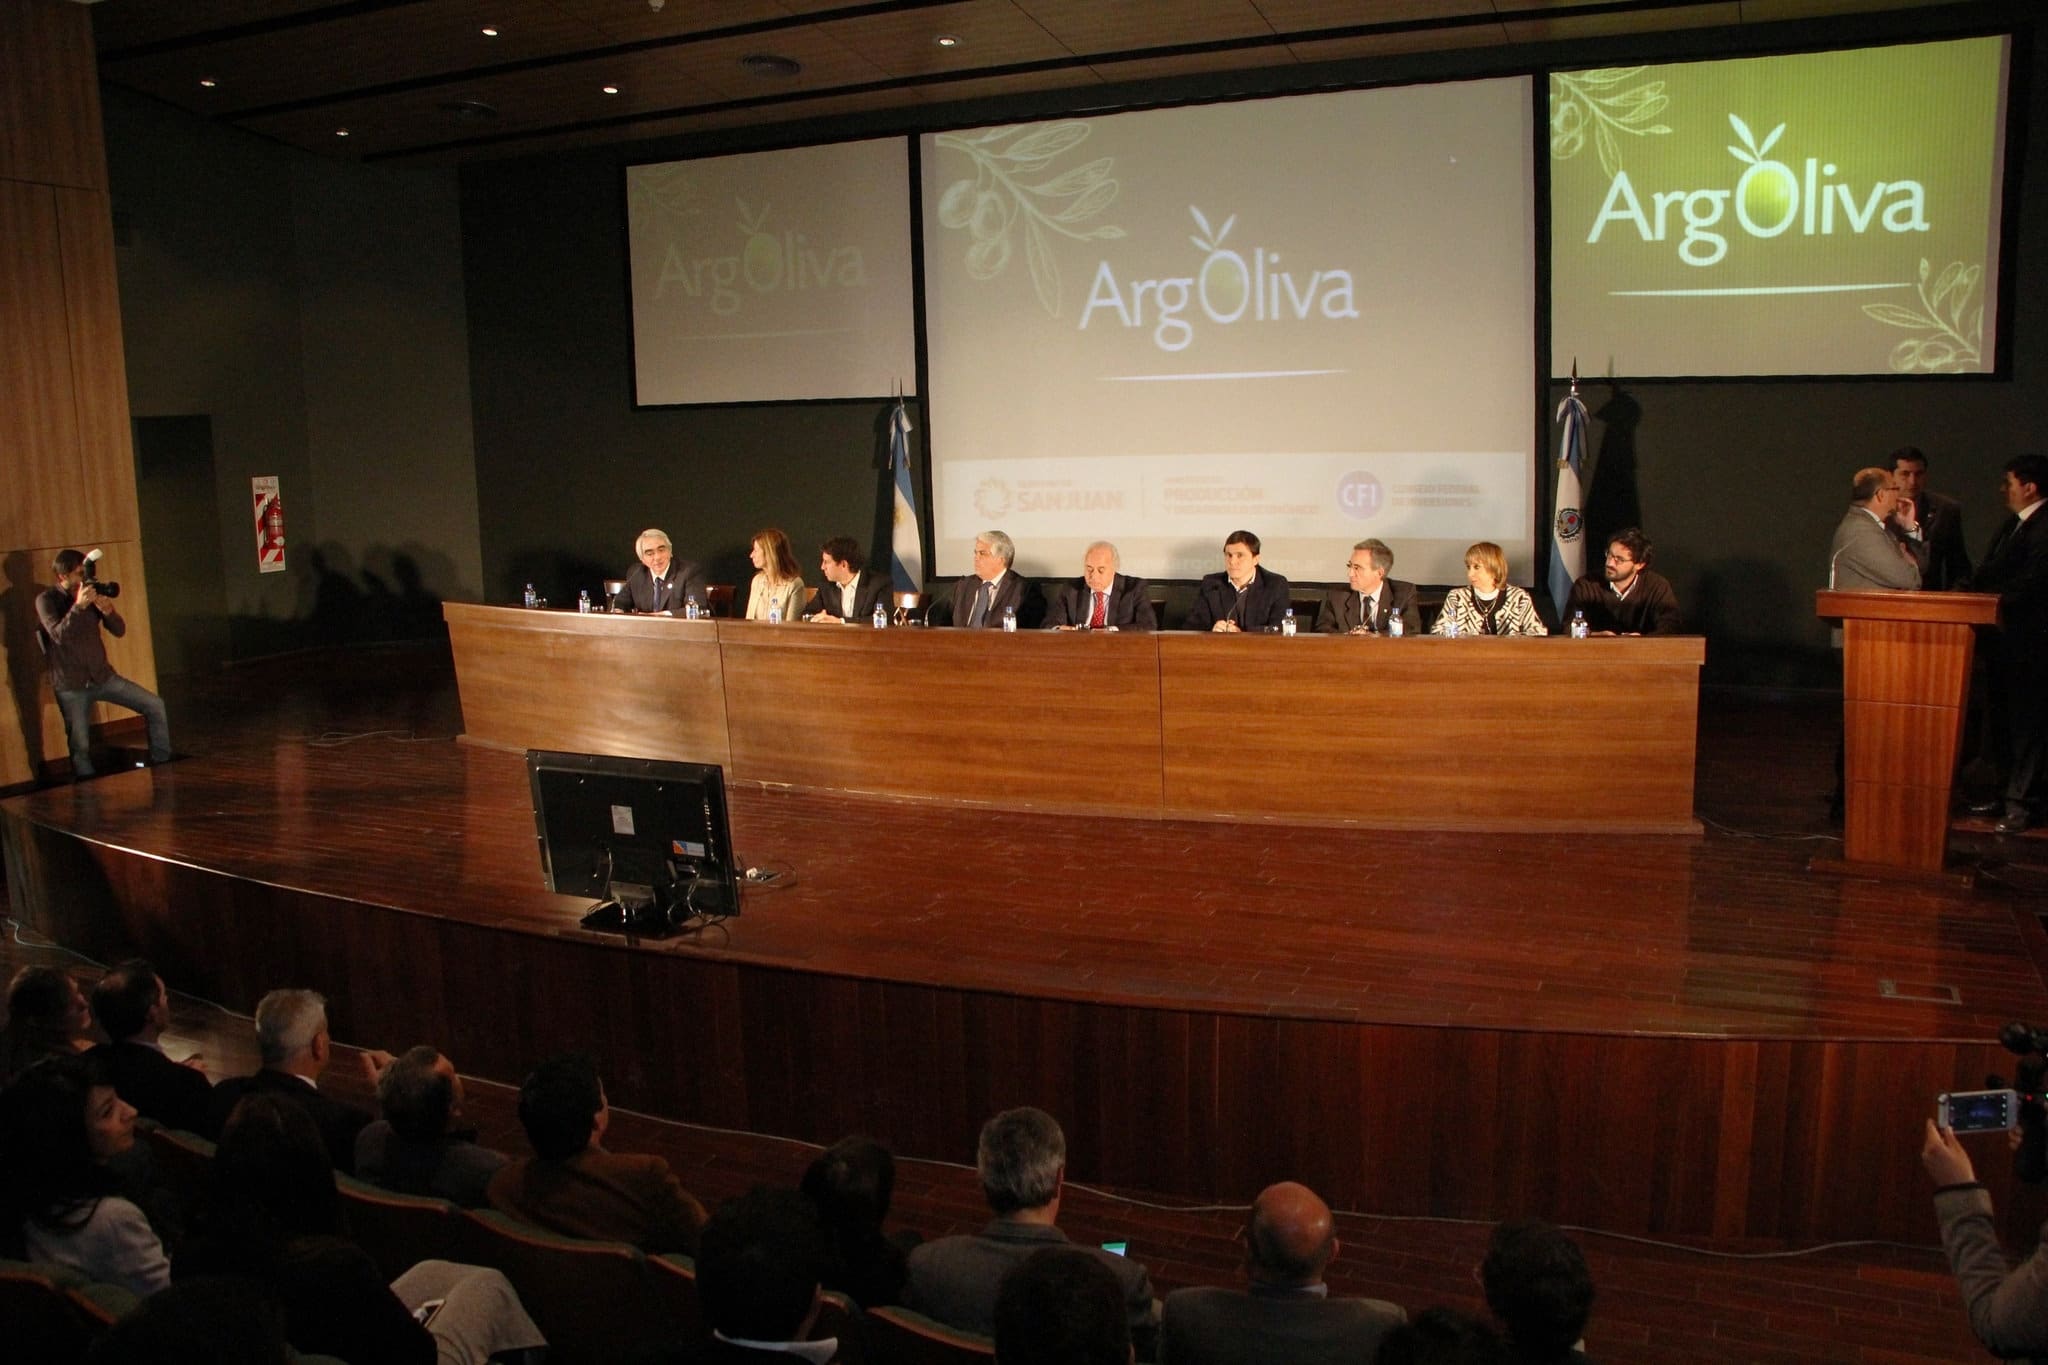 El vicegobernador Marcelo Lima encabezó el acto de apertura del Encuentro Olivícola Internacional “ArgOliva” 2016.